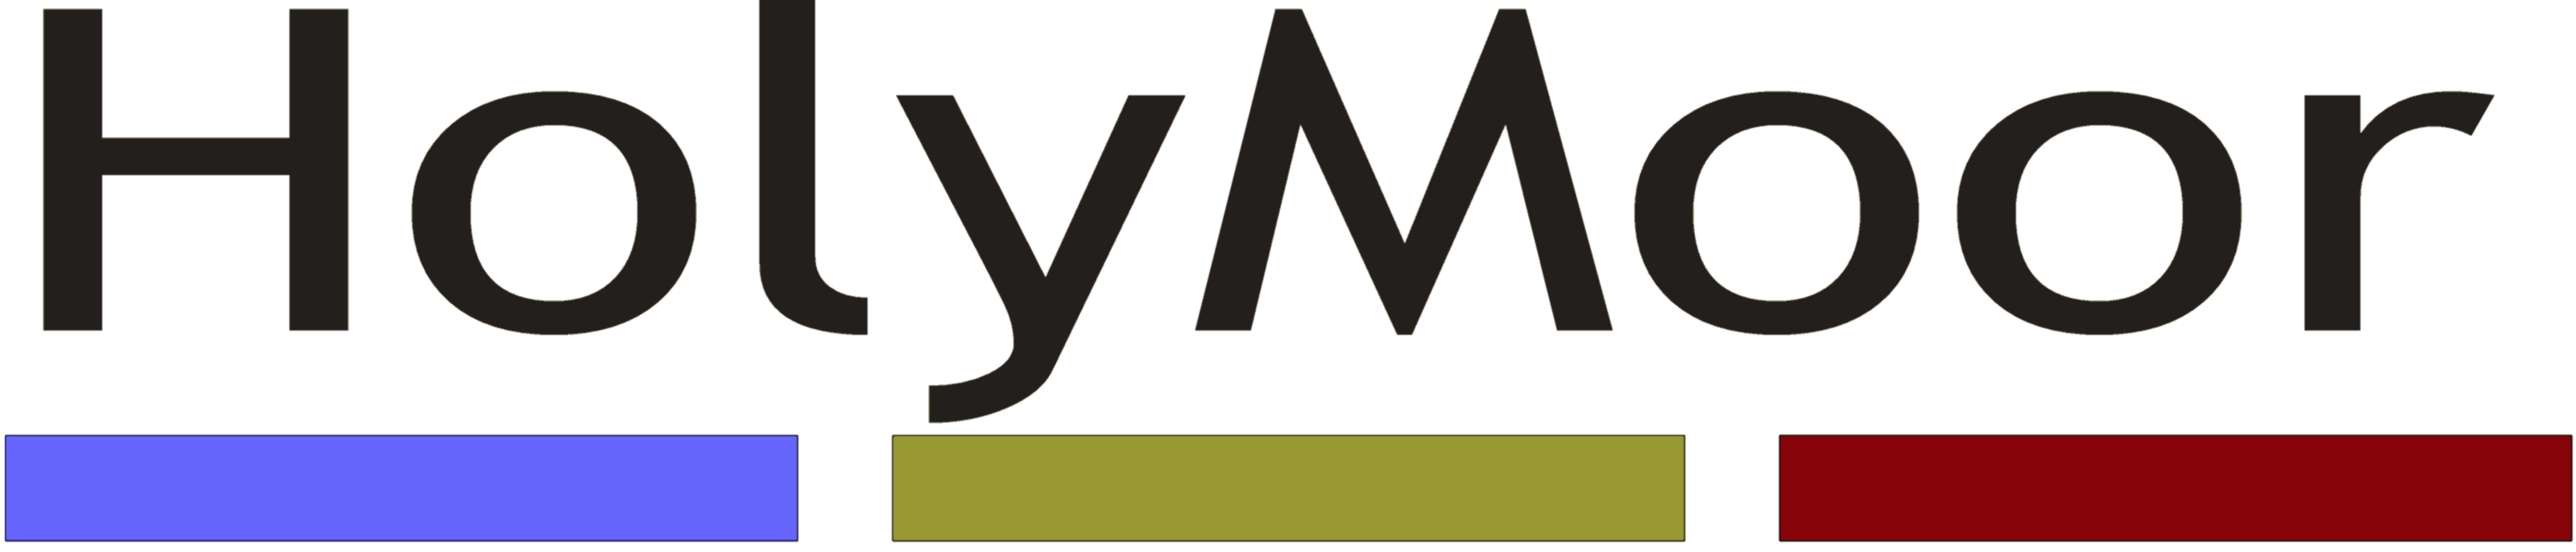 Holymoor logo